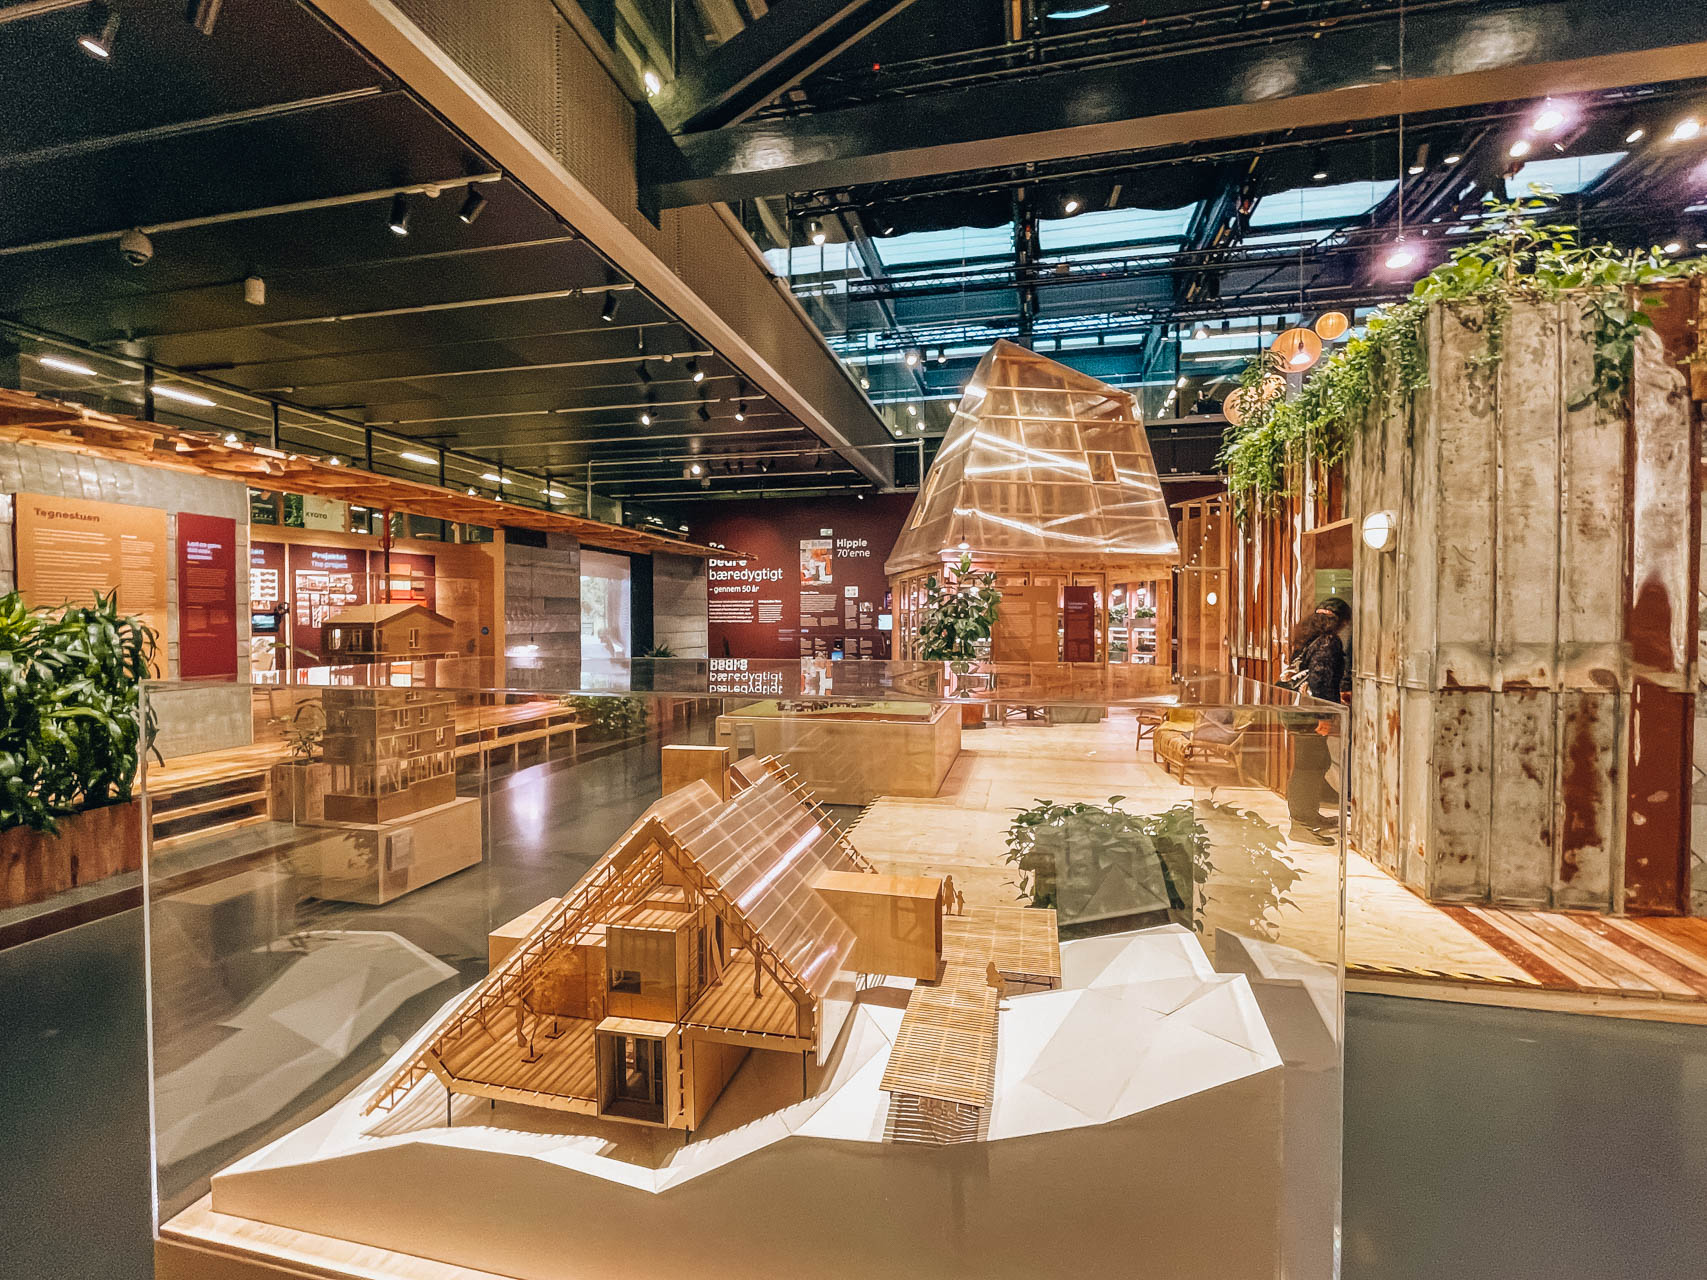 Duńskie Centrum Architektury | Zwiedzanie Koenhagi